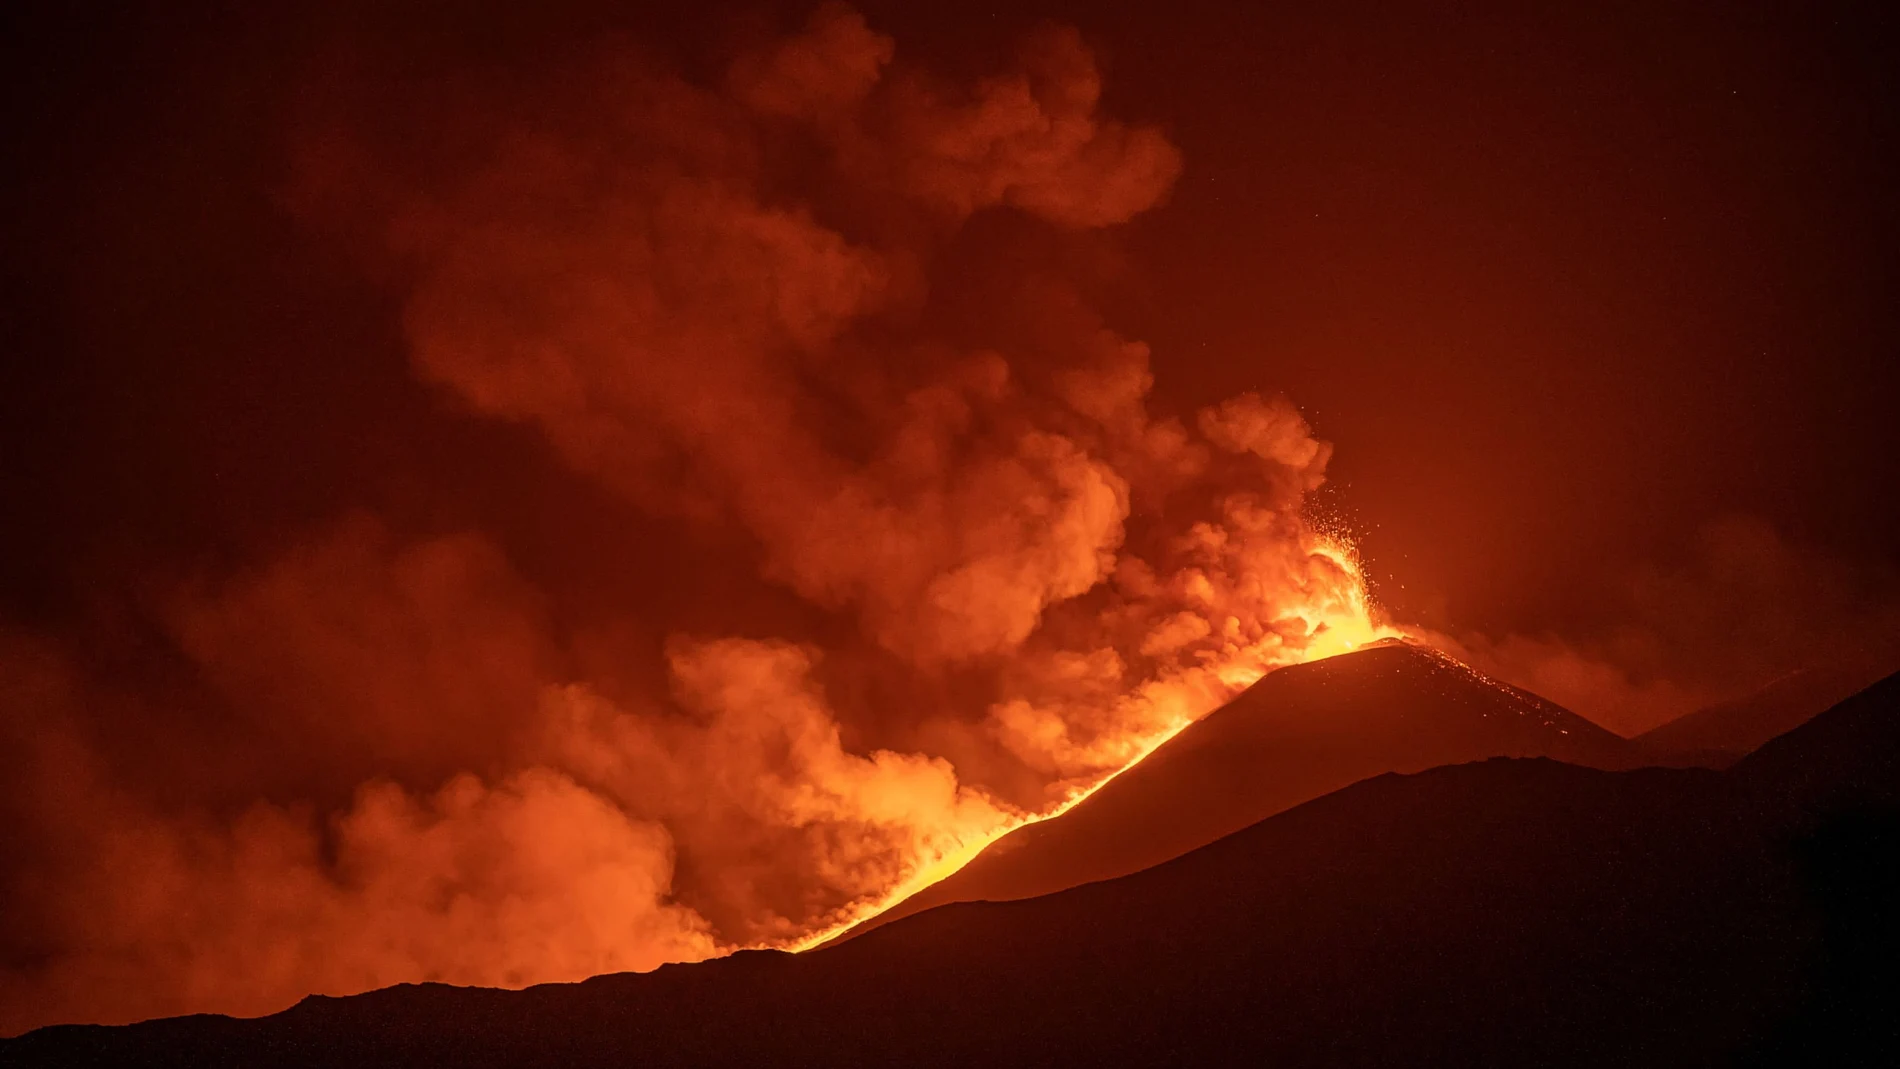 El pasado domingo 29 de agosto, el volcán Etna entró en erupción por quincuagésima vez.